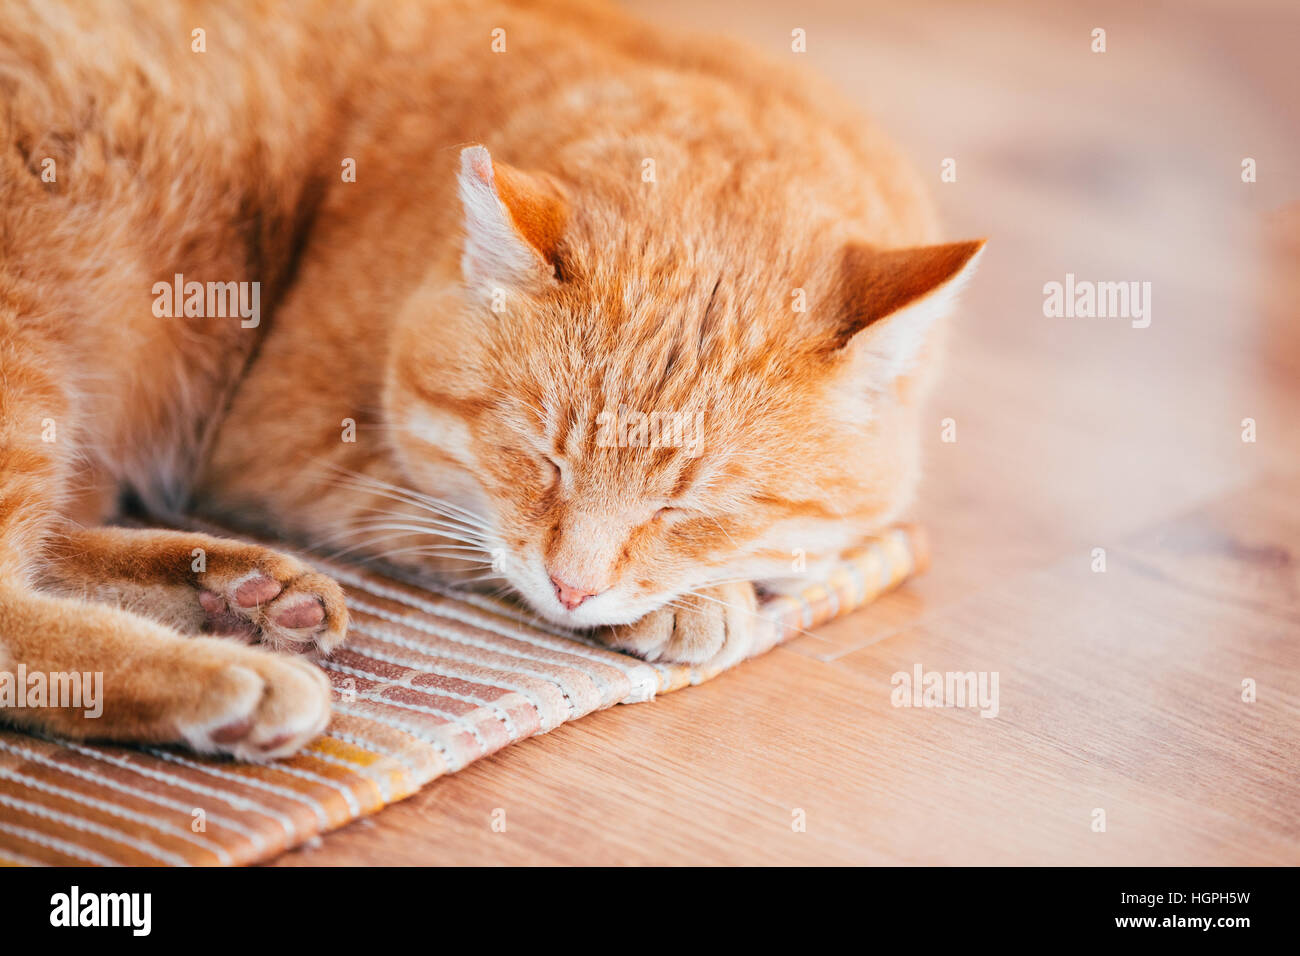 Friedliche Orange Rot Tabby Katze Kitten männlich zusammengerollt schläft In seinem Bett auf Laminatboden. Stockfoto